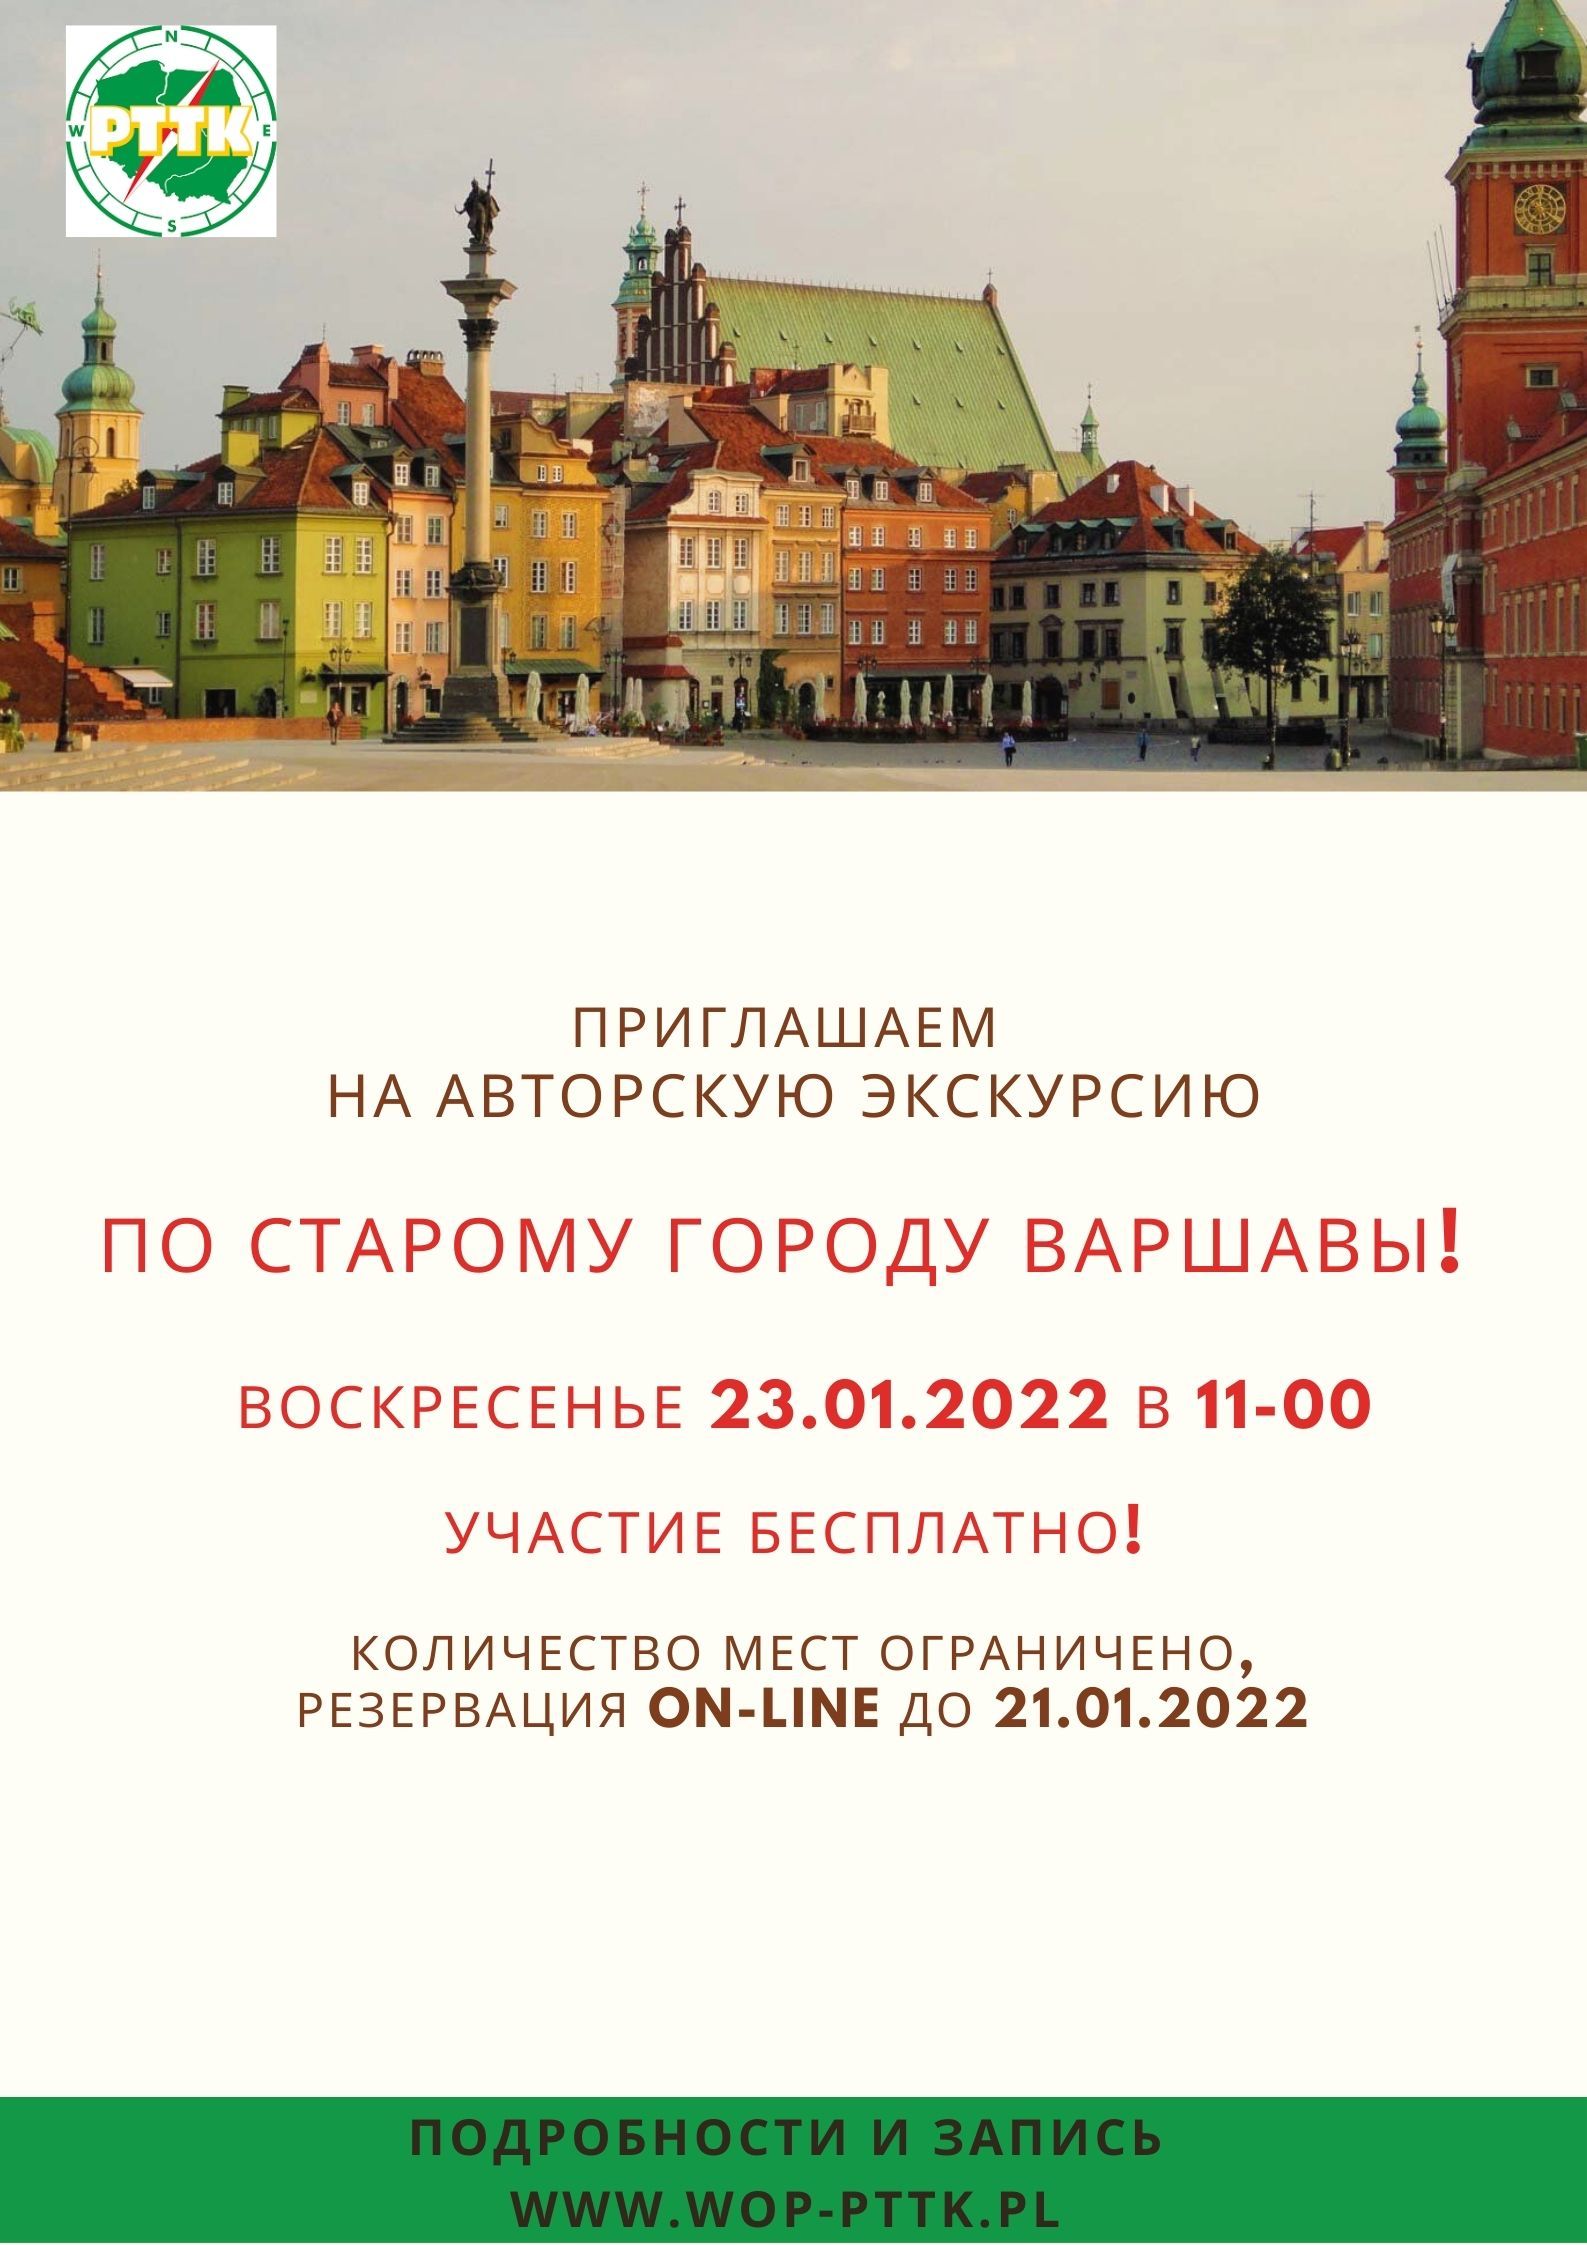 Приглашаем на авторскую русскоязычную экскурсию по Старому городу Варшавы - 23.01.2022